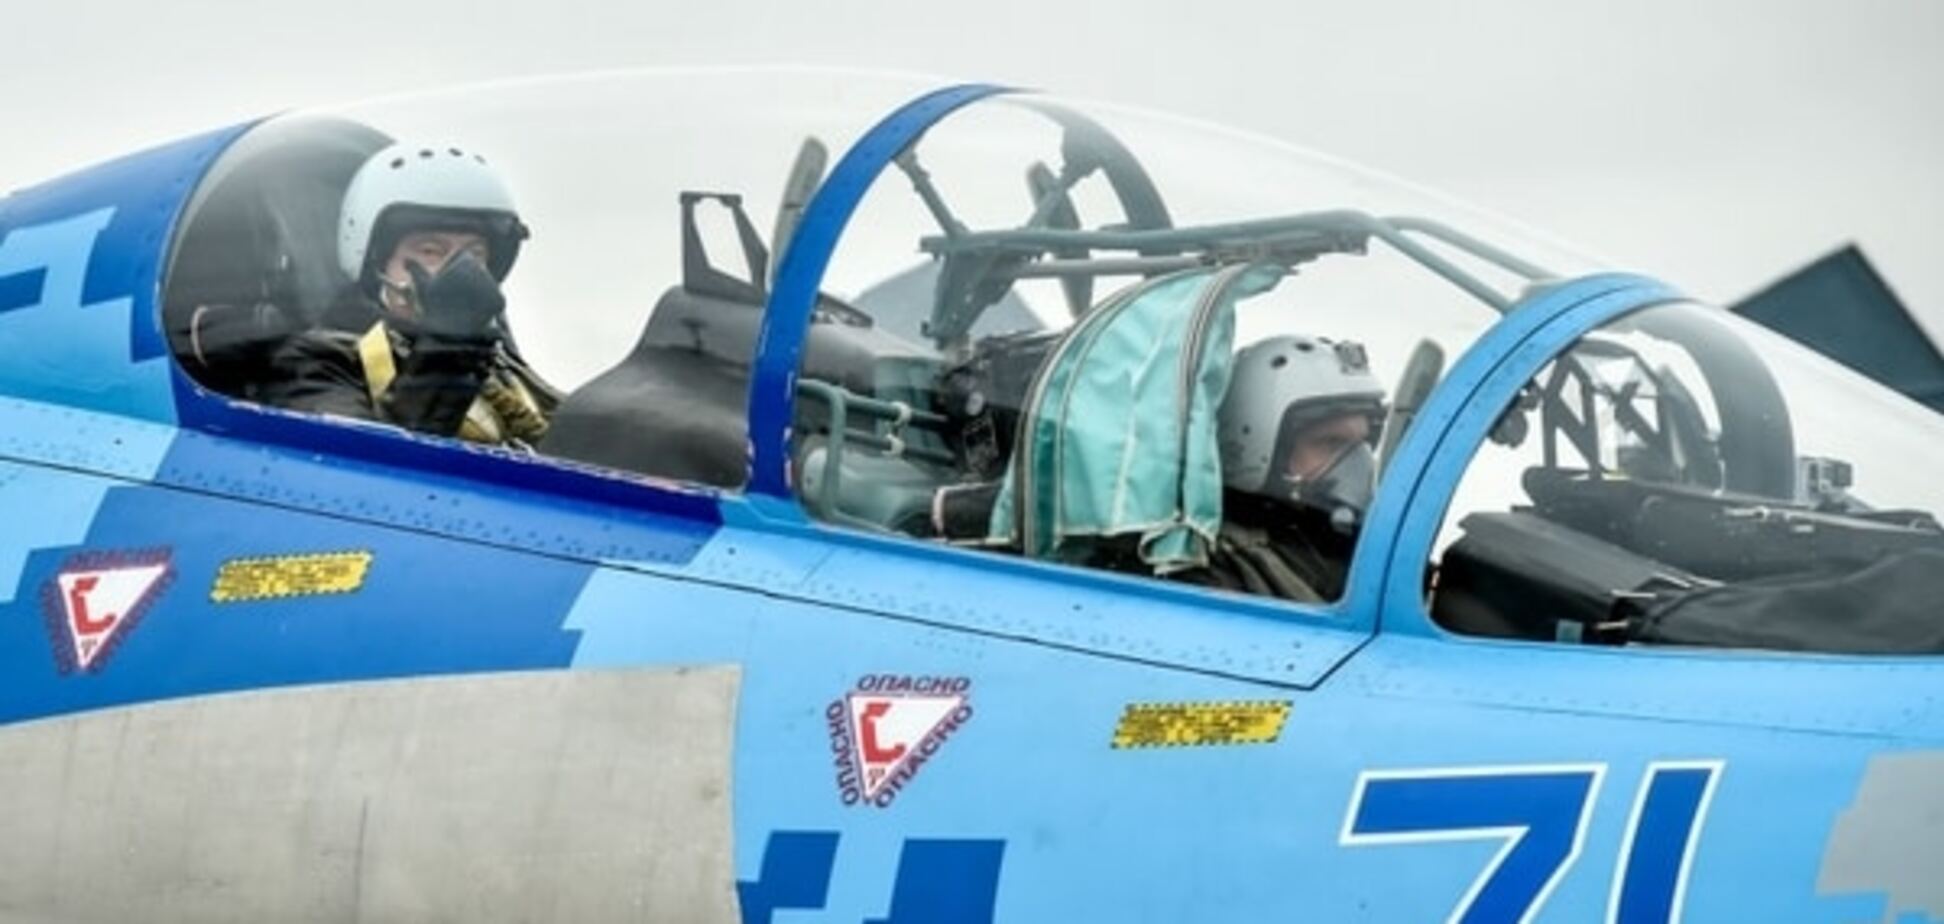 Порошенко лично испытал истребитель Су-27: опубликованы фото